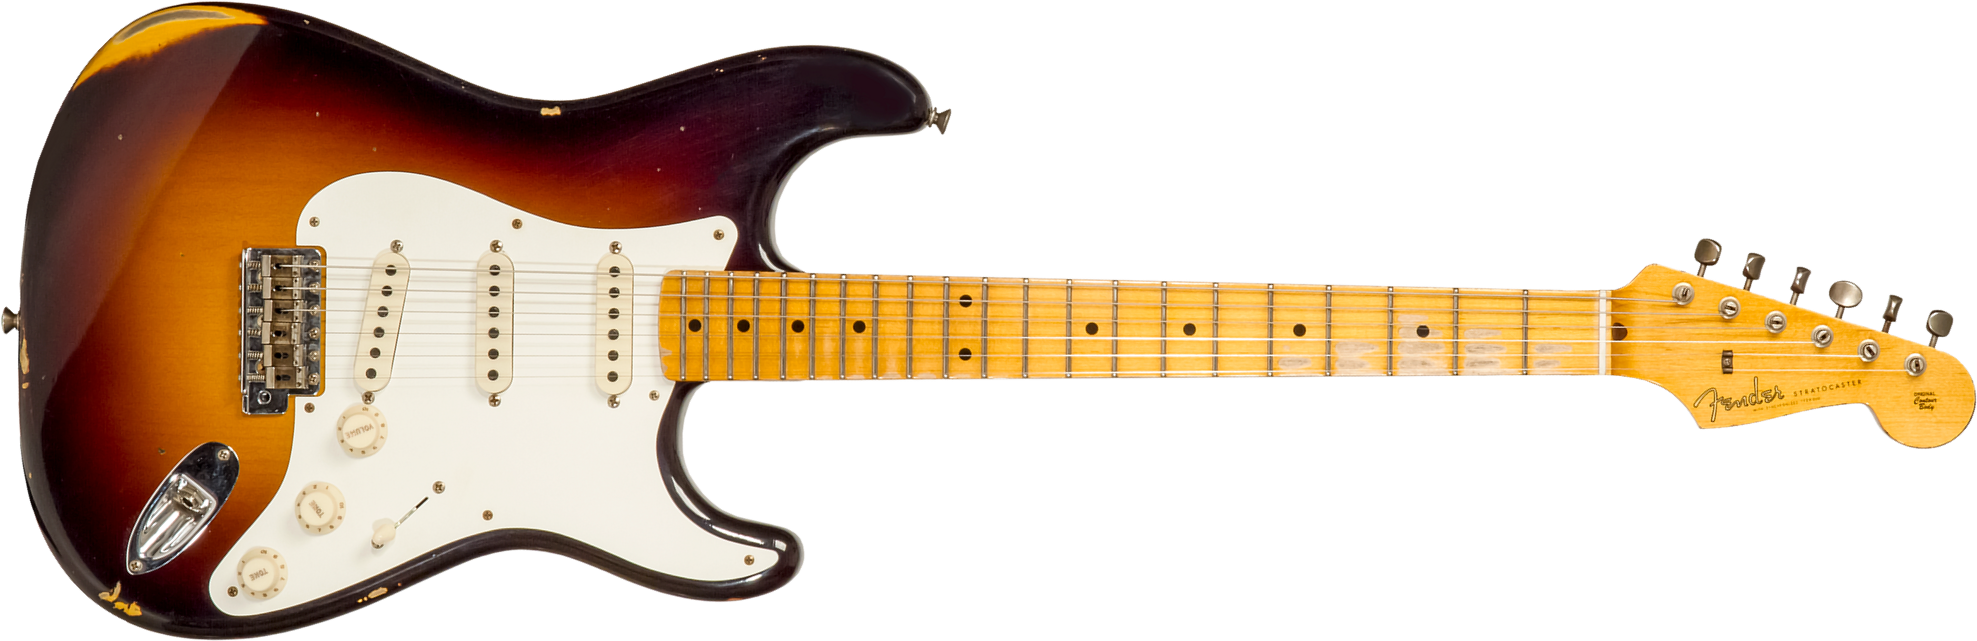 Fender Custom Shop Strat 1957 3s Trem Mn #cz571791 - Relic Wide Fade 2-color Sunburst - Guitare Électrique Forme Str - Main picture